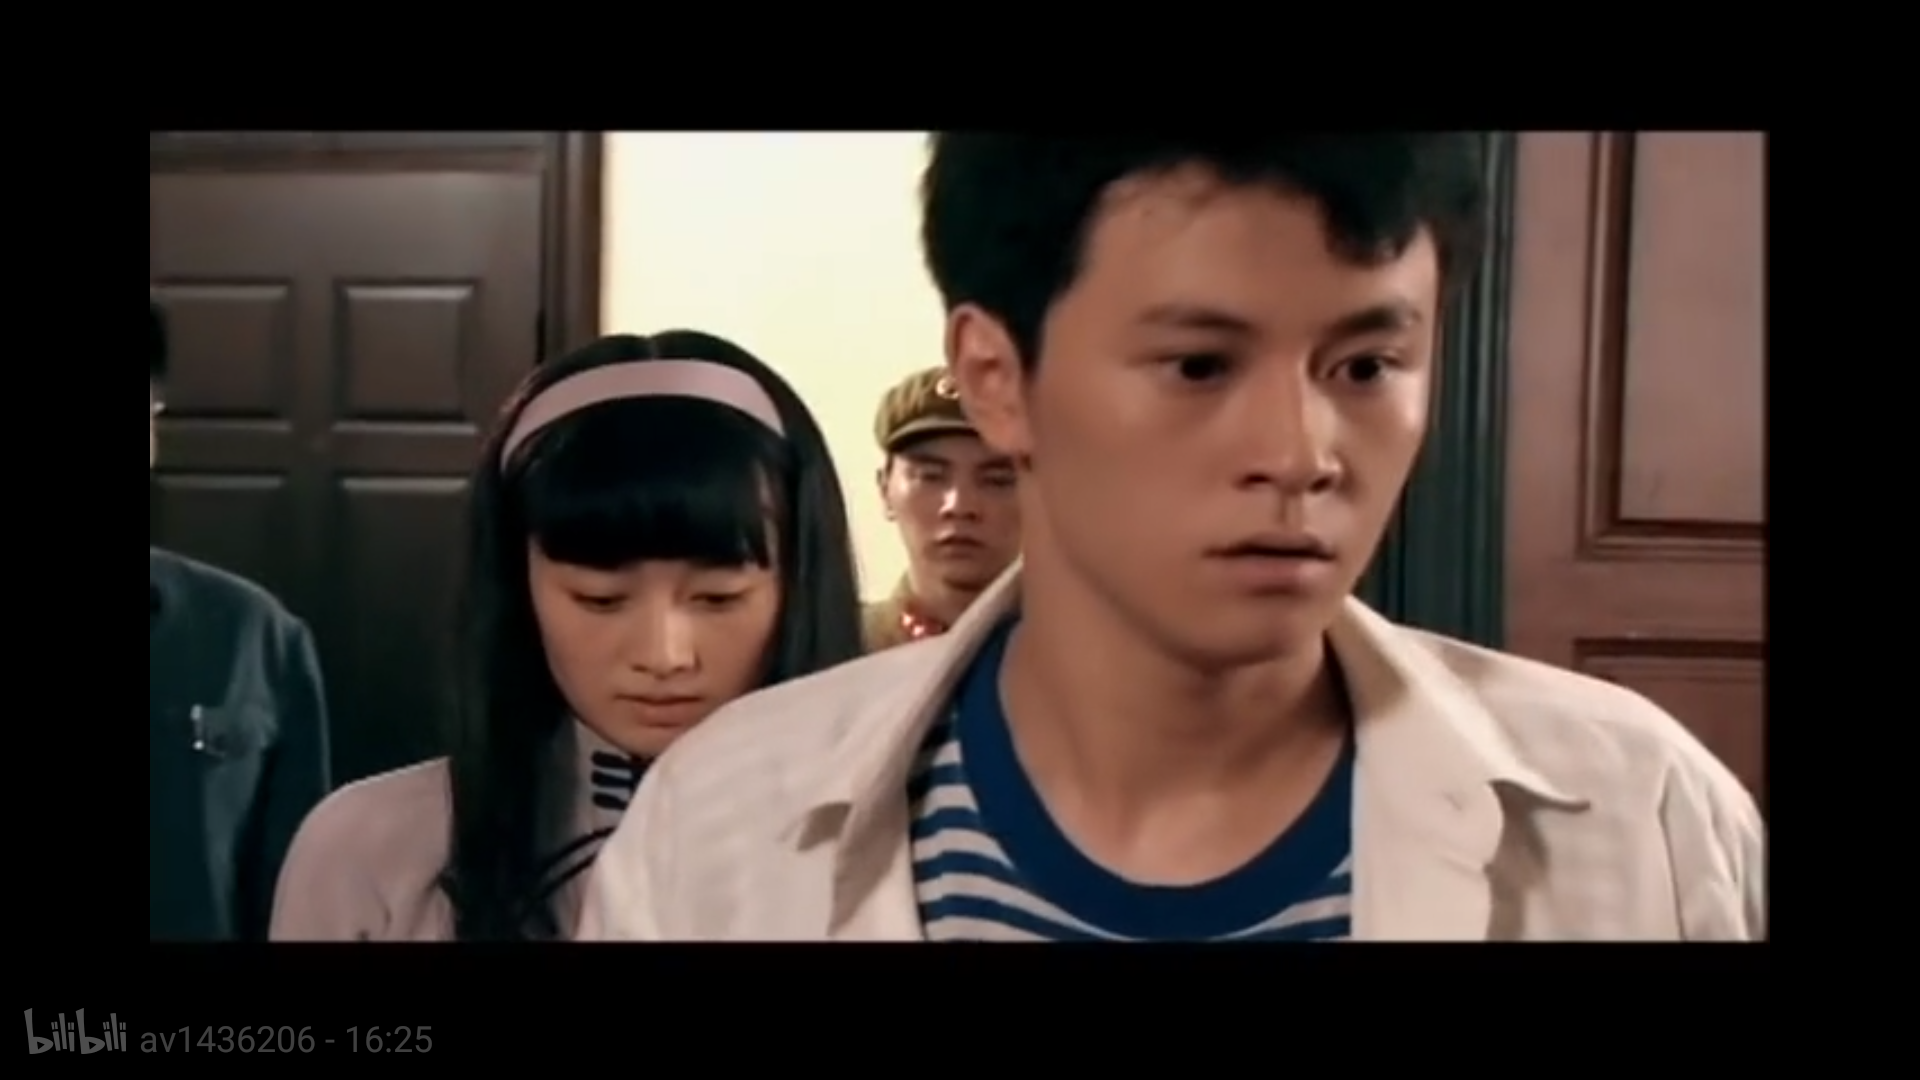 有哪些演技不错的中国青年演员?